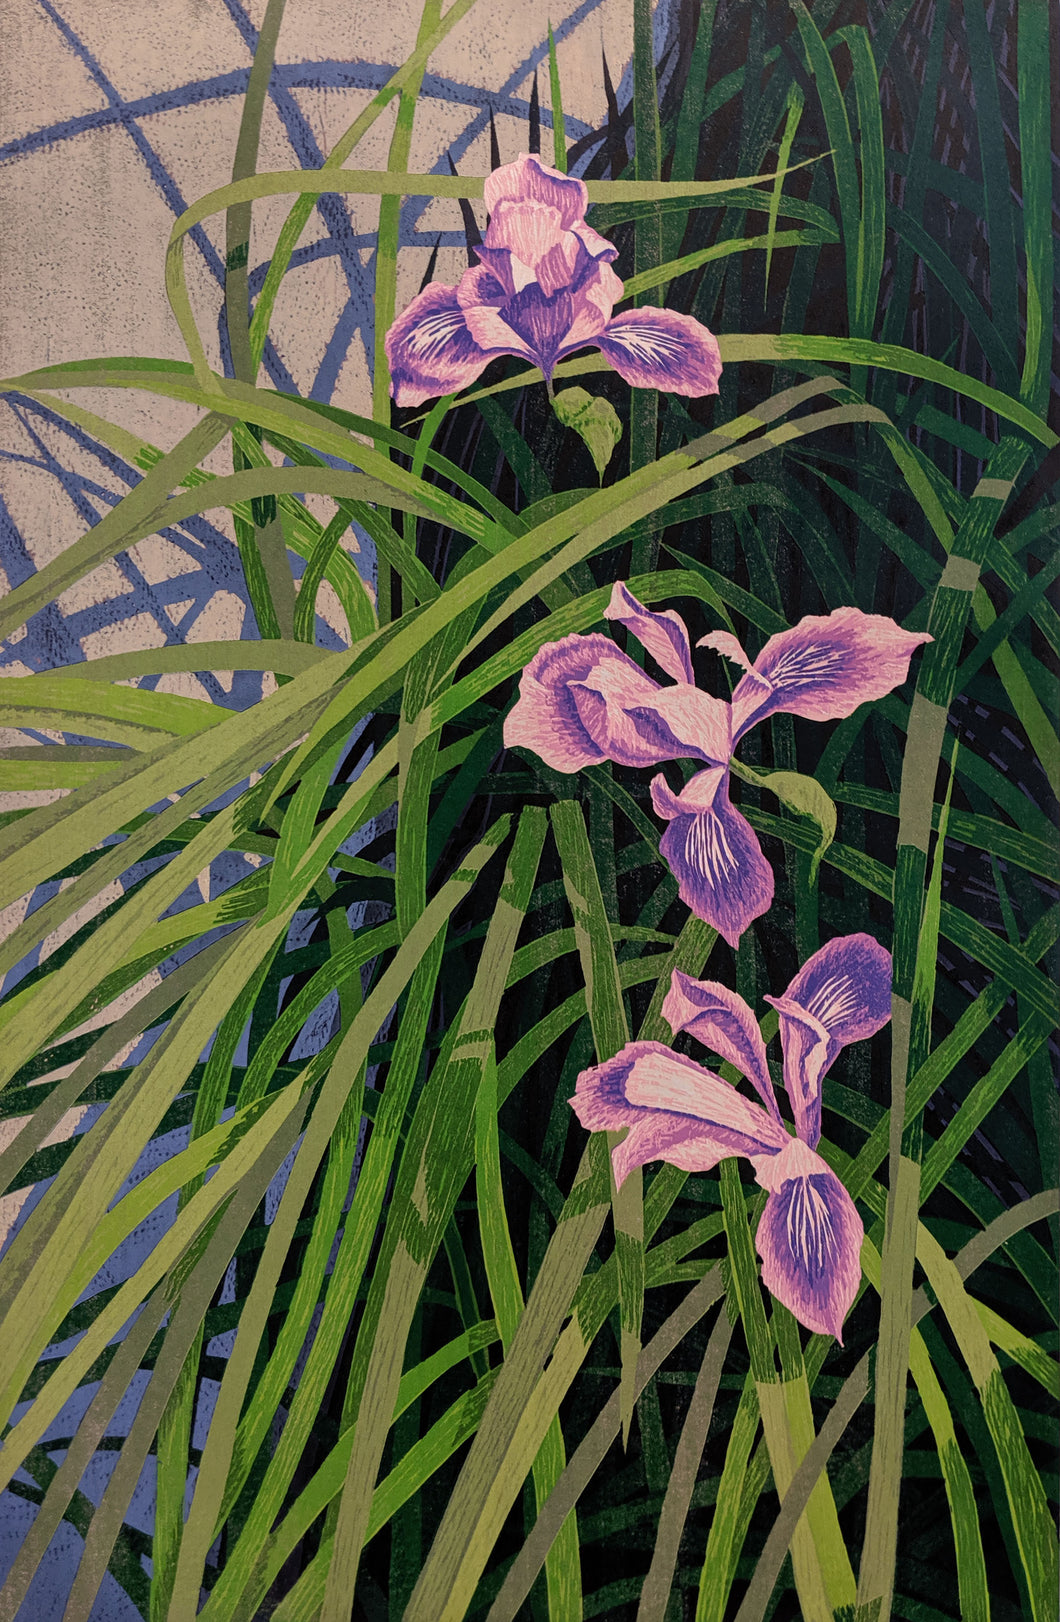 Wild Iris - Woodcut on Paper by artist Gordon Mortensen